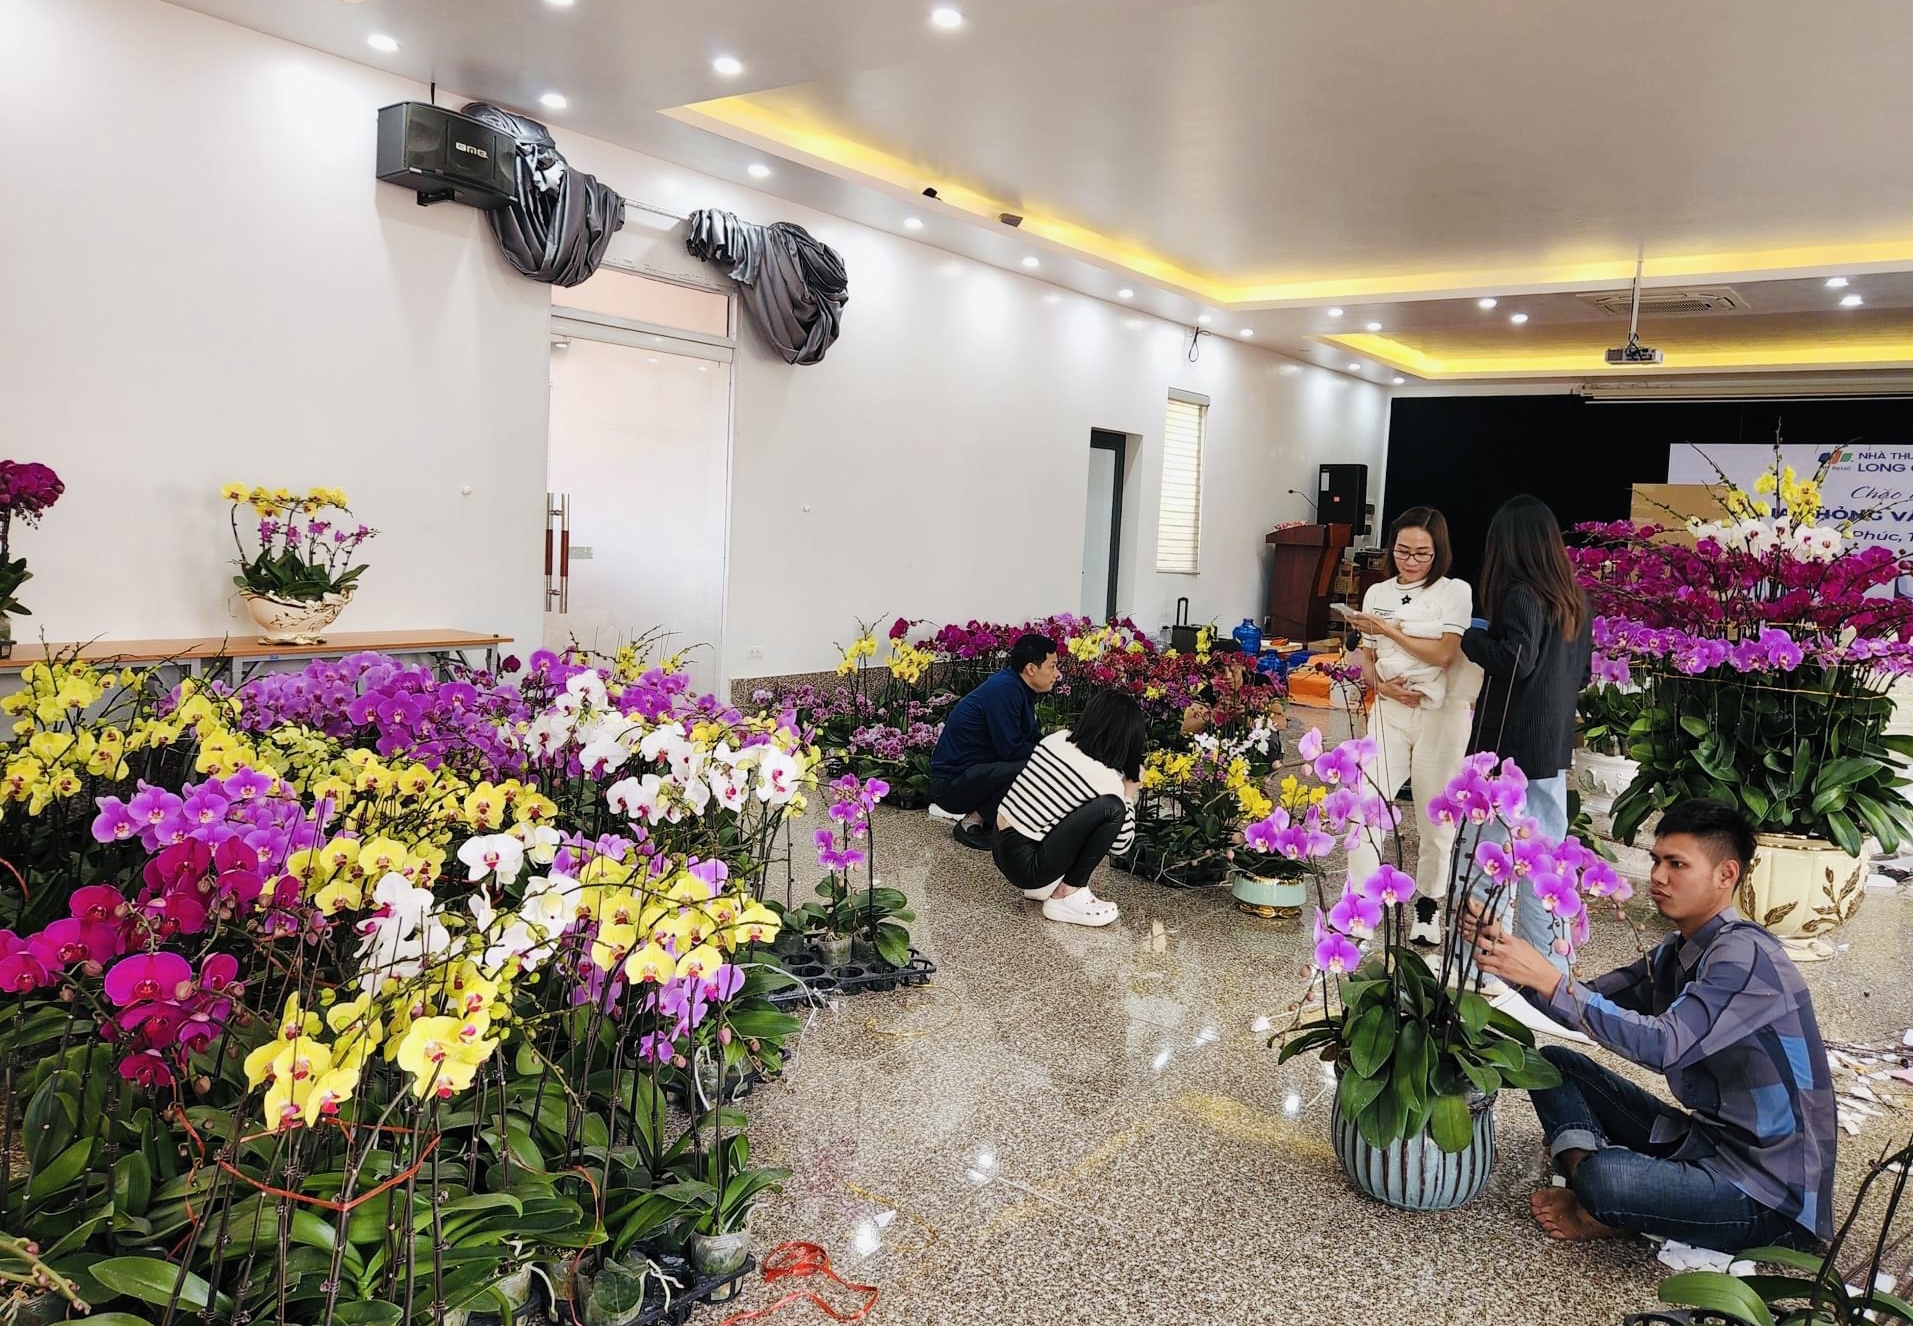 Chỉ ngồi cắm hoa mà ra hàng chục triệu tiền Tết ở Vĩnh Phúc - Ảnh 1.